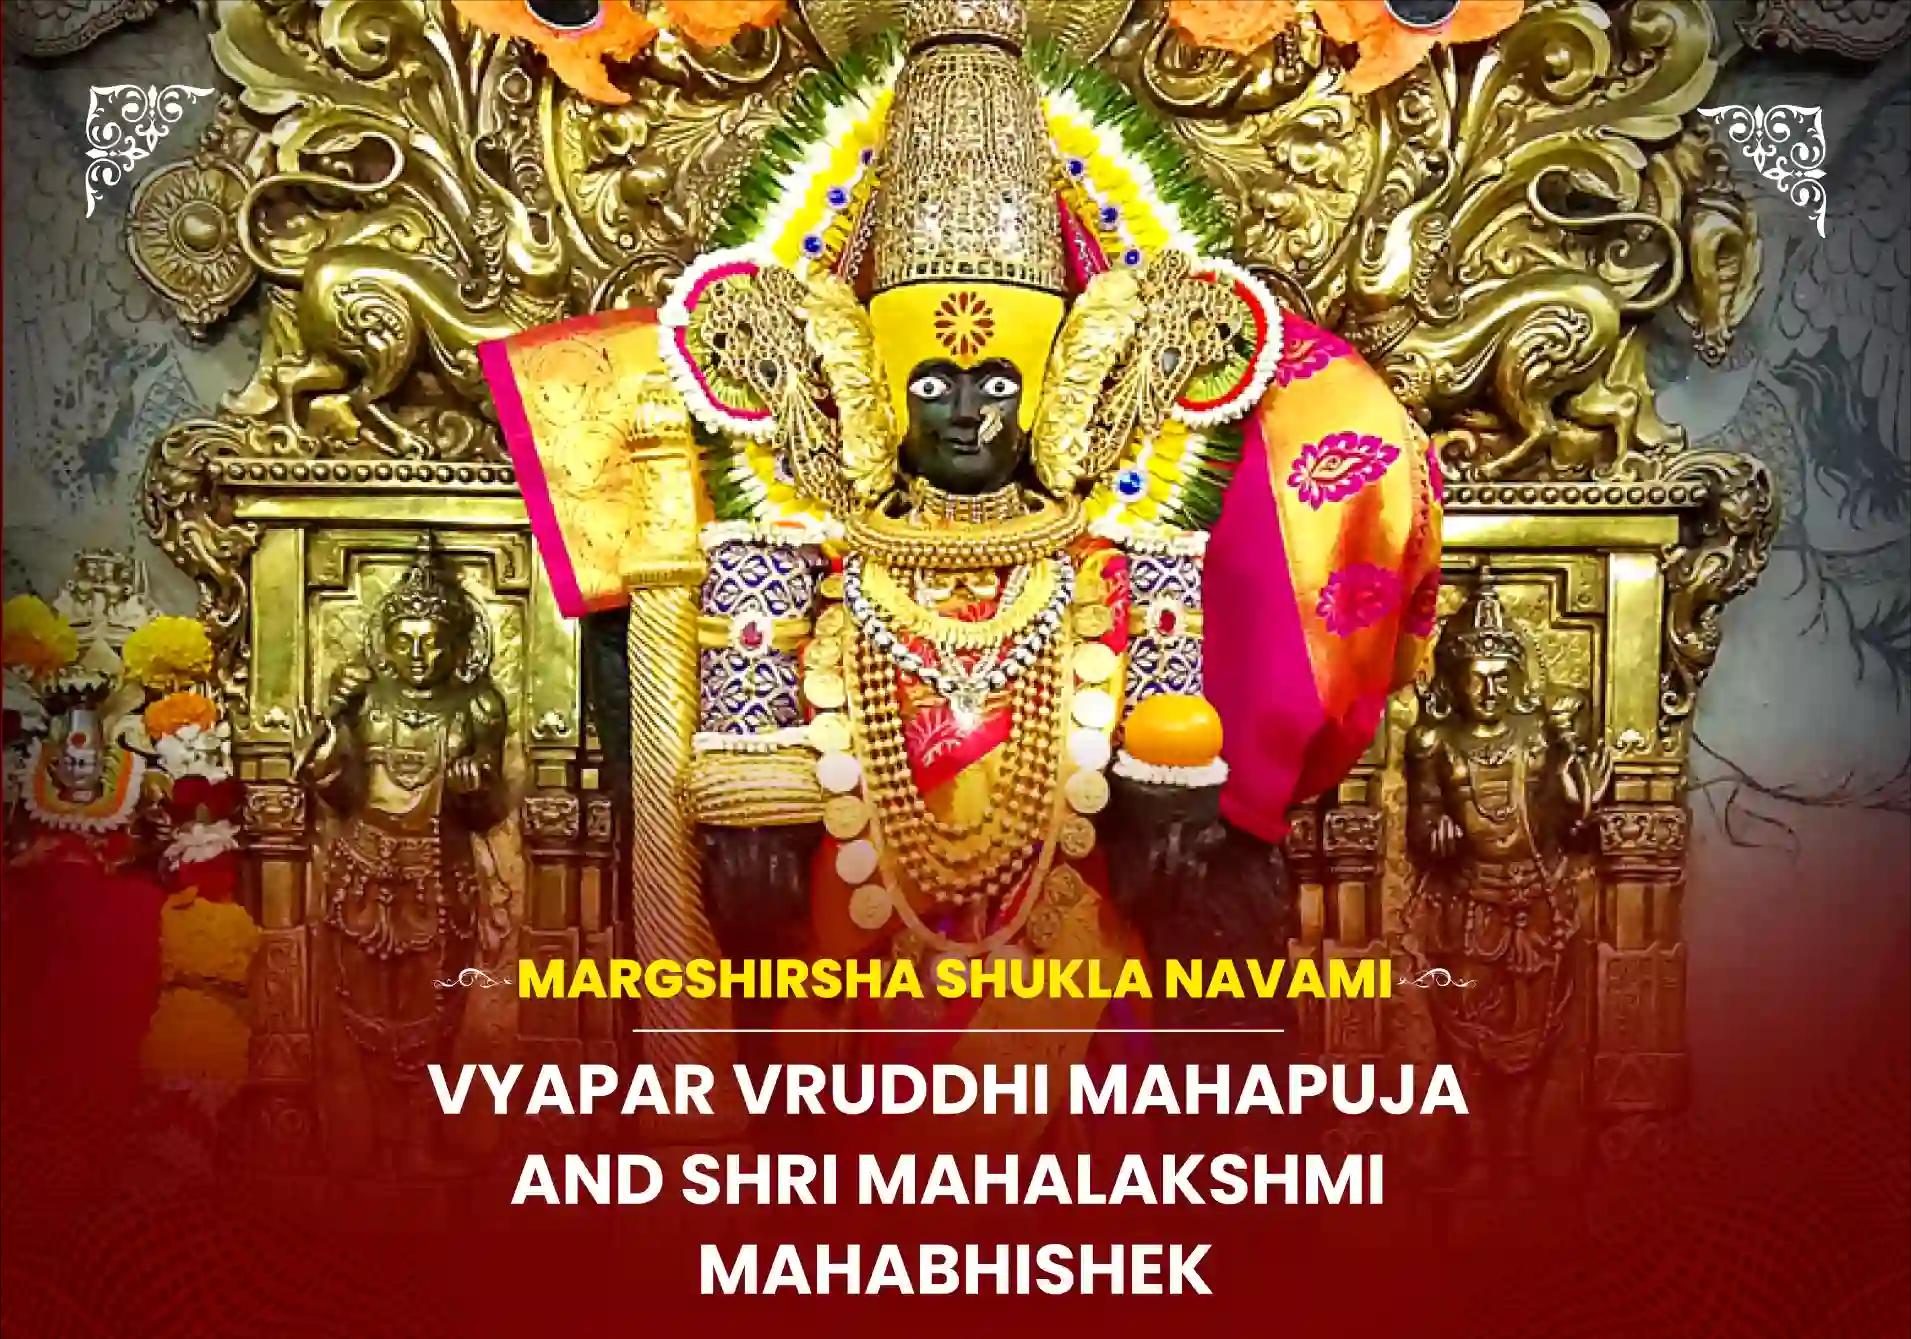 Vyapar Vruddhi Mahapuja and Shri Mahalakshmi Mahabhishek